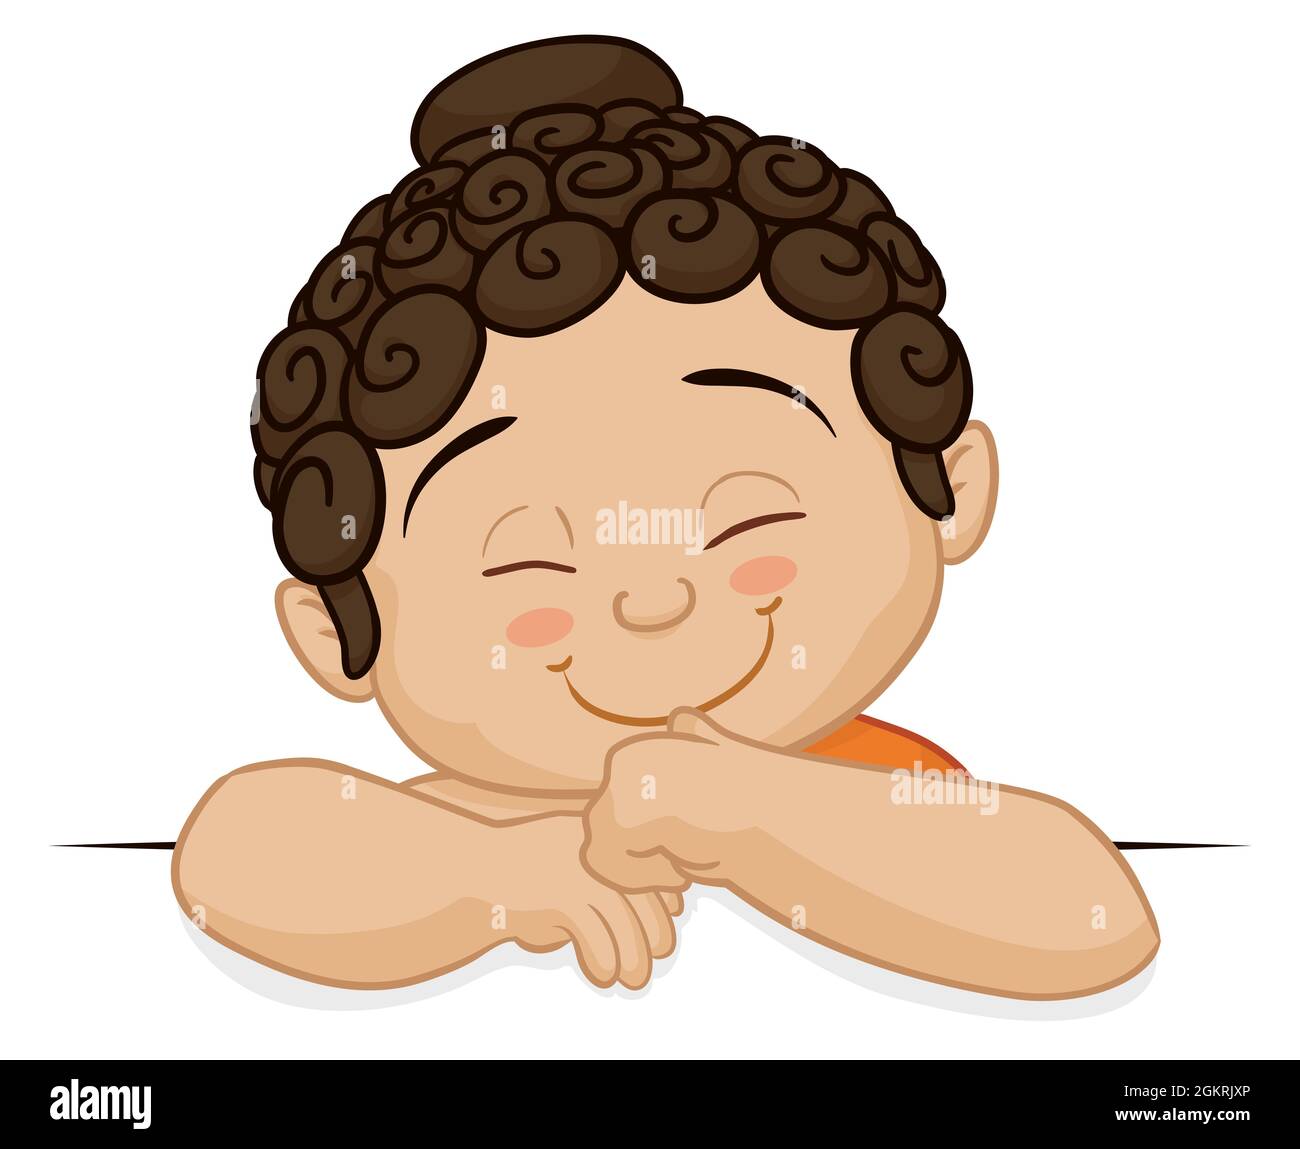 Cartoon-Design mit niedlichen Baby-Buddha mit Finger im Mund auf weißem Hintergrund. Stock Vektor